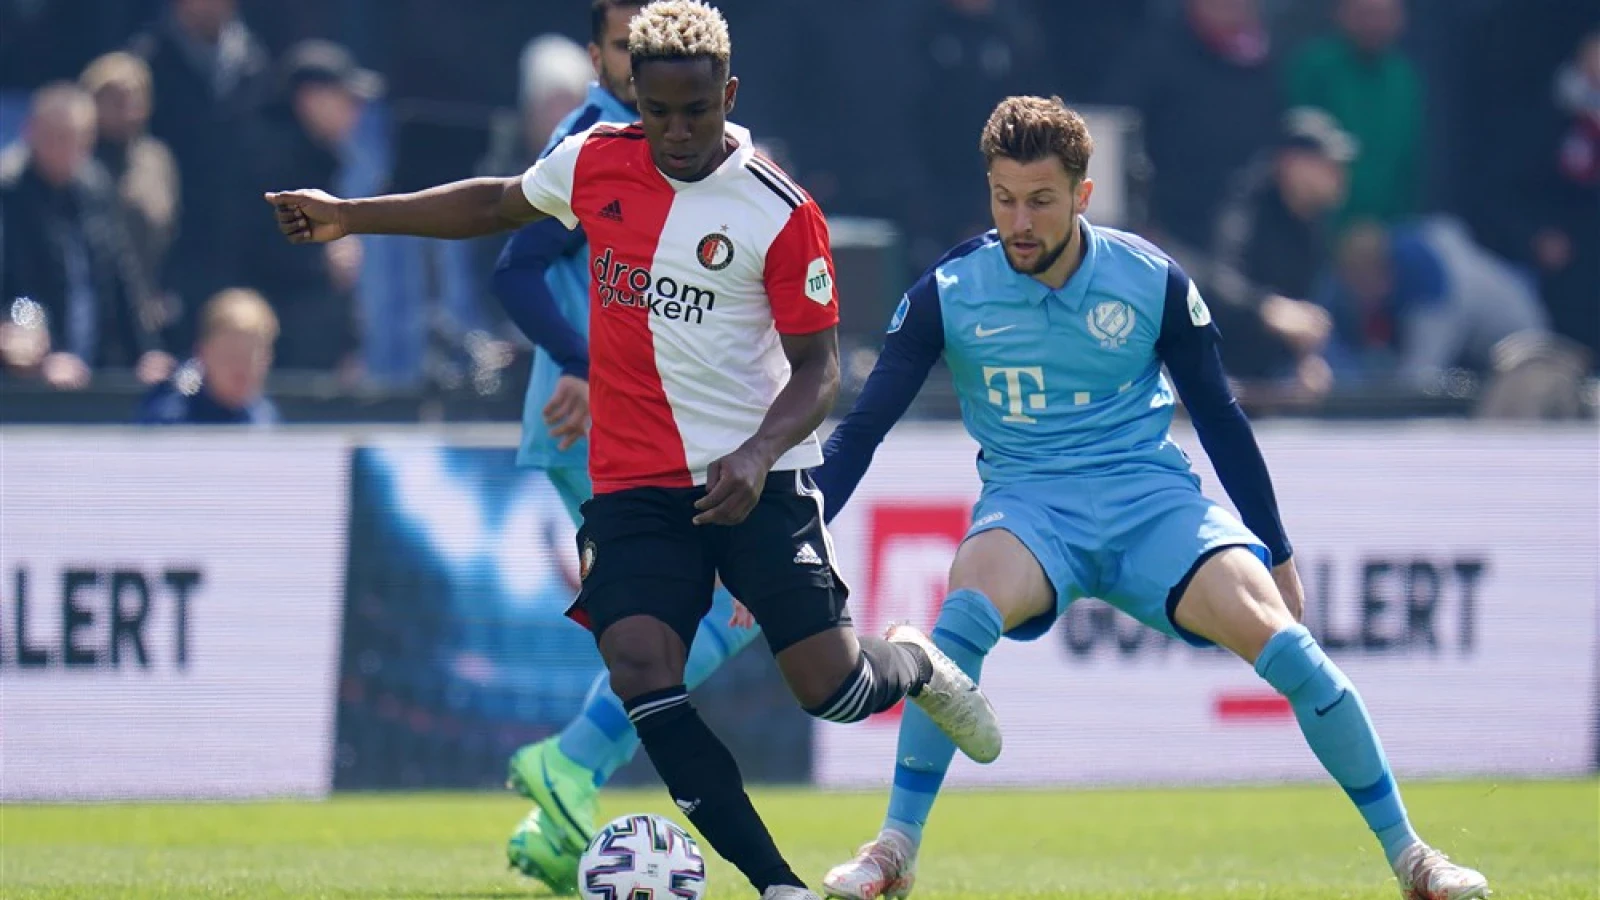 LIVE | Feyenoord - FC Utrecht 2-0 | Einde wedstrijd